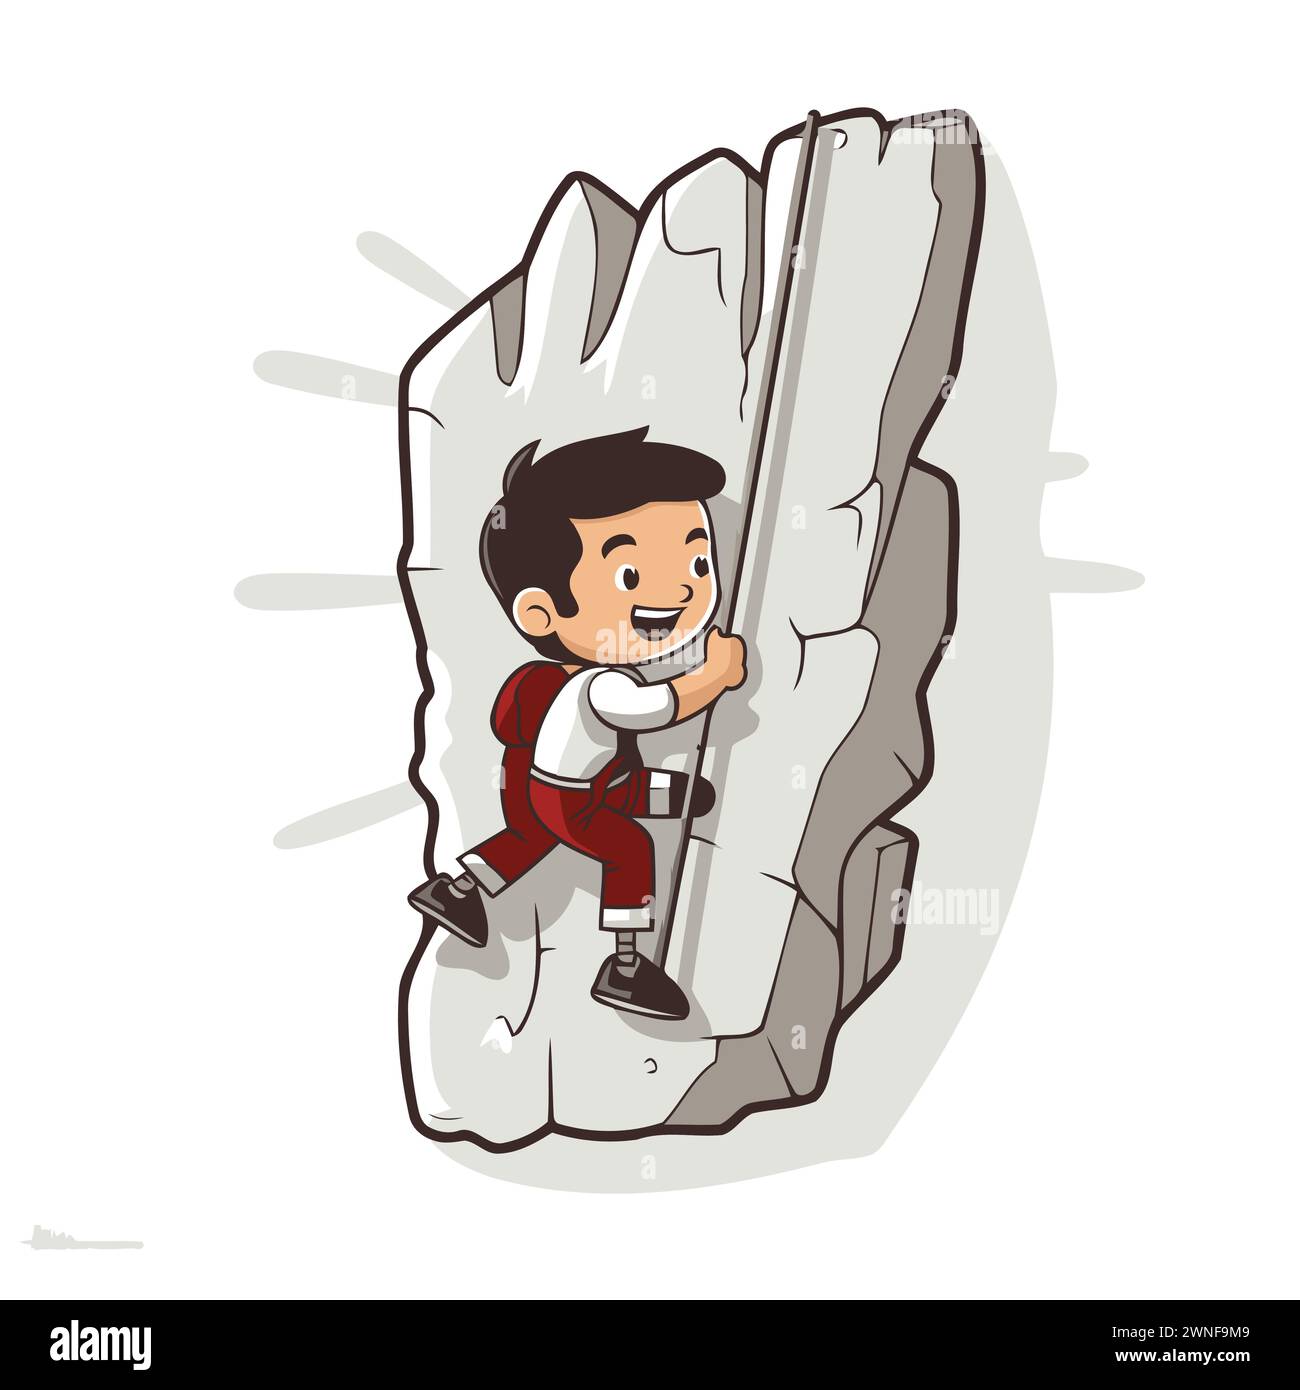 Arrampicatore di cartoni animati che si arrampica su una scogliera. Illustrazione vettoriale. Illustrazione Vettoriale